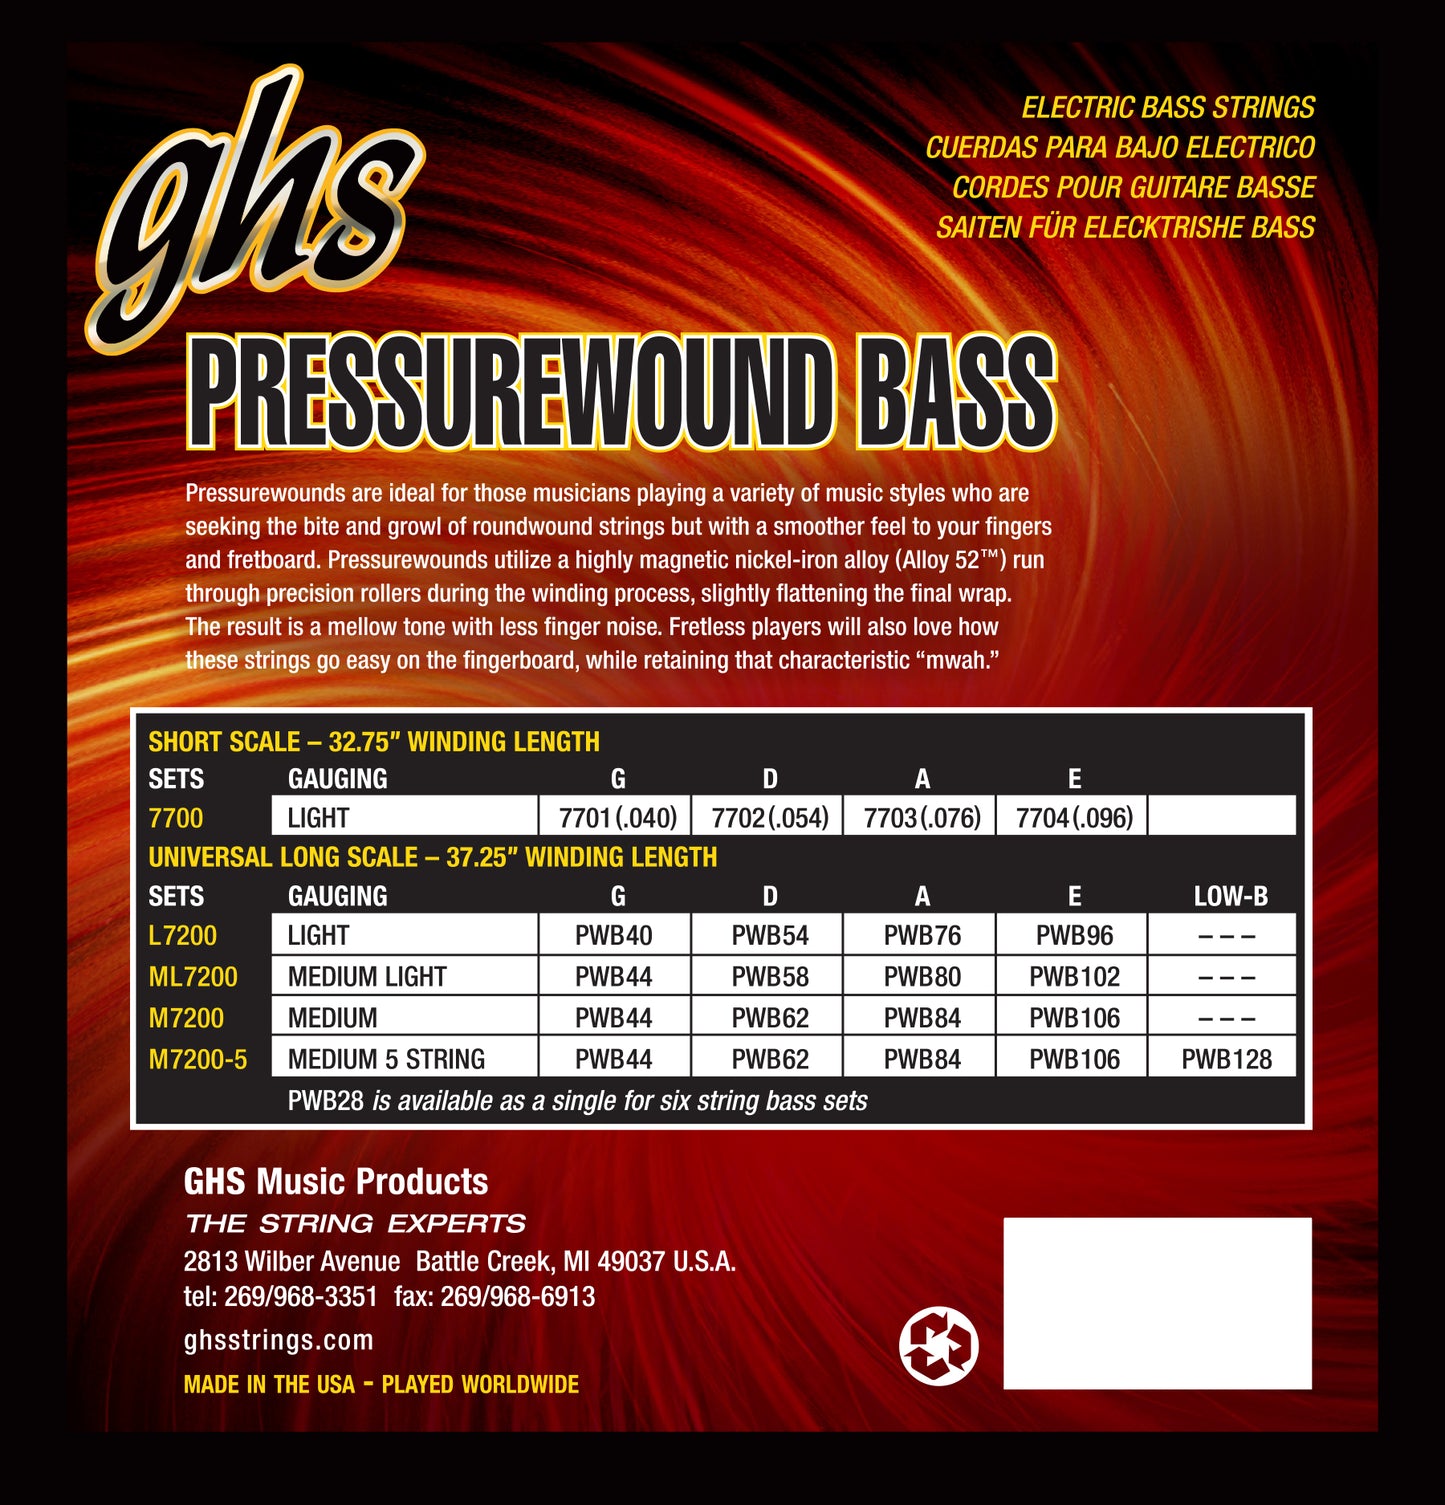 GHS Pressurewound M7200, 4-String 44-106